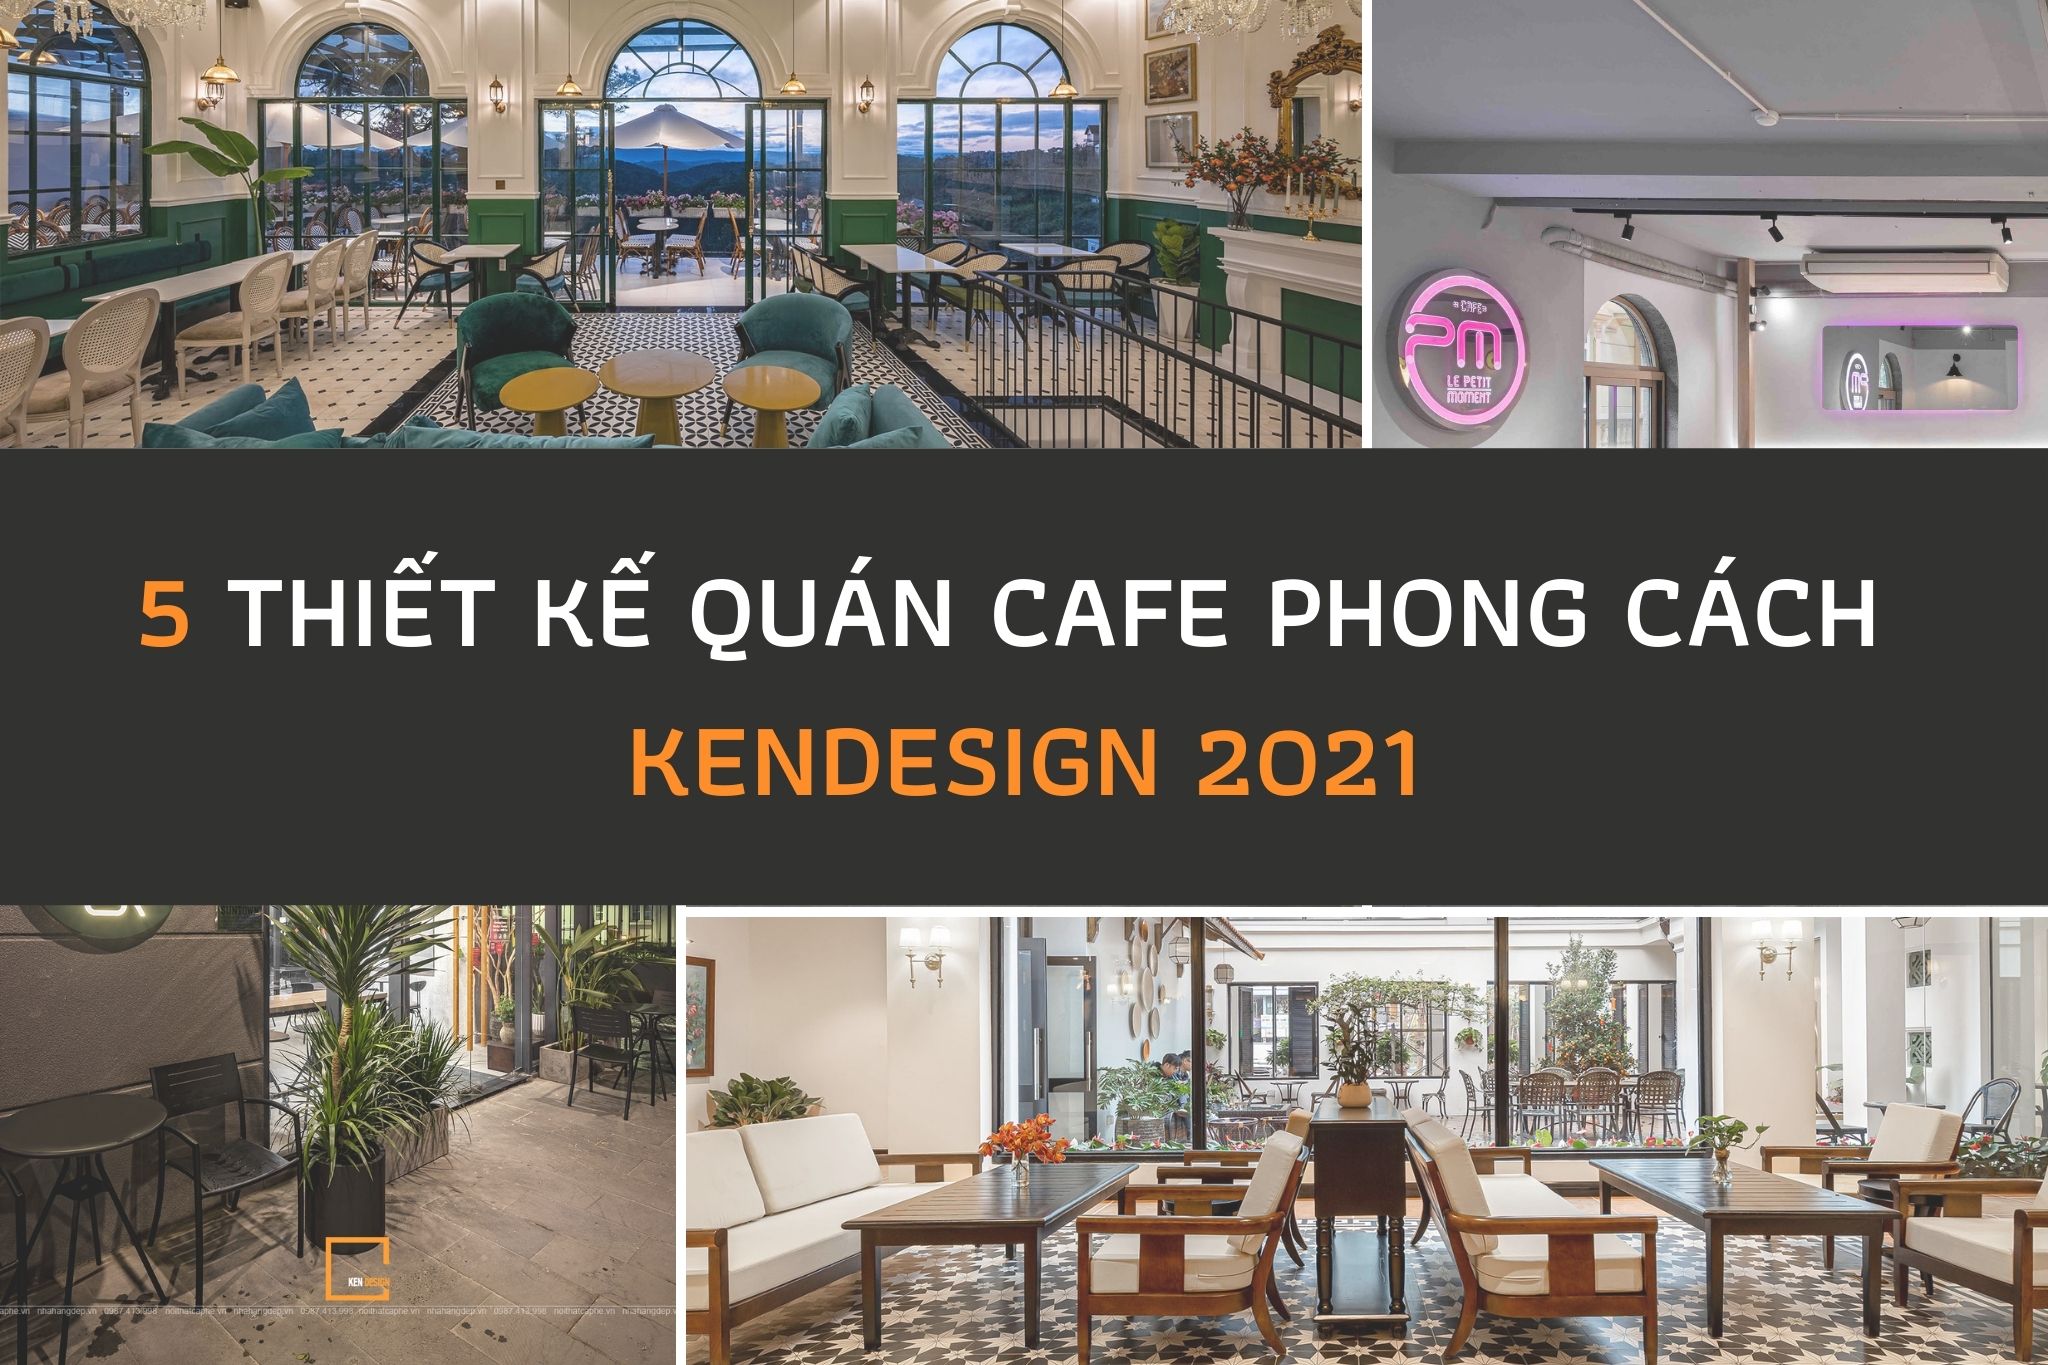 Top 5 thiết kế quán cafe phong cách của nhà "Ken" 2021